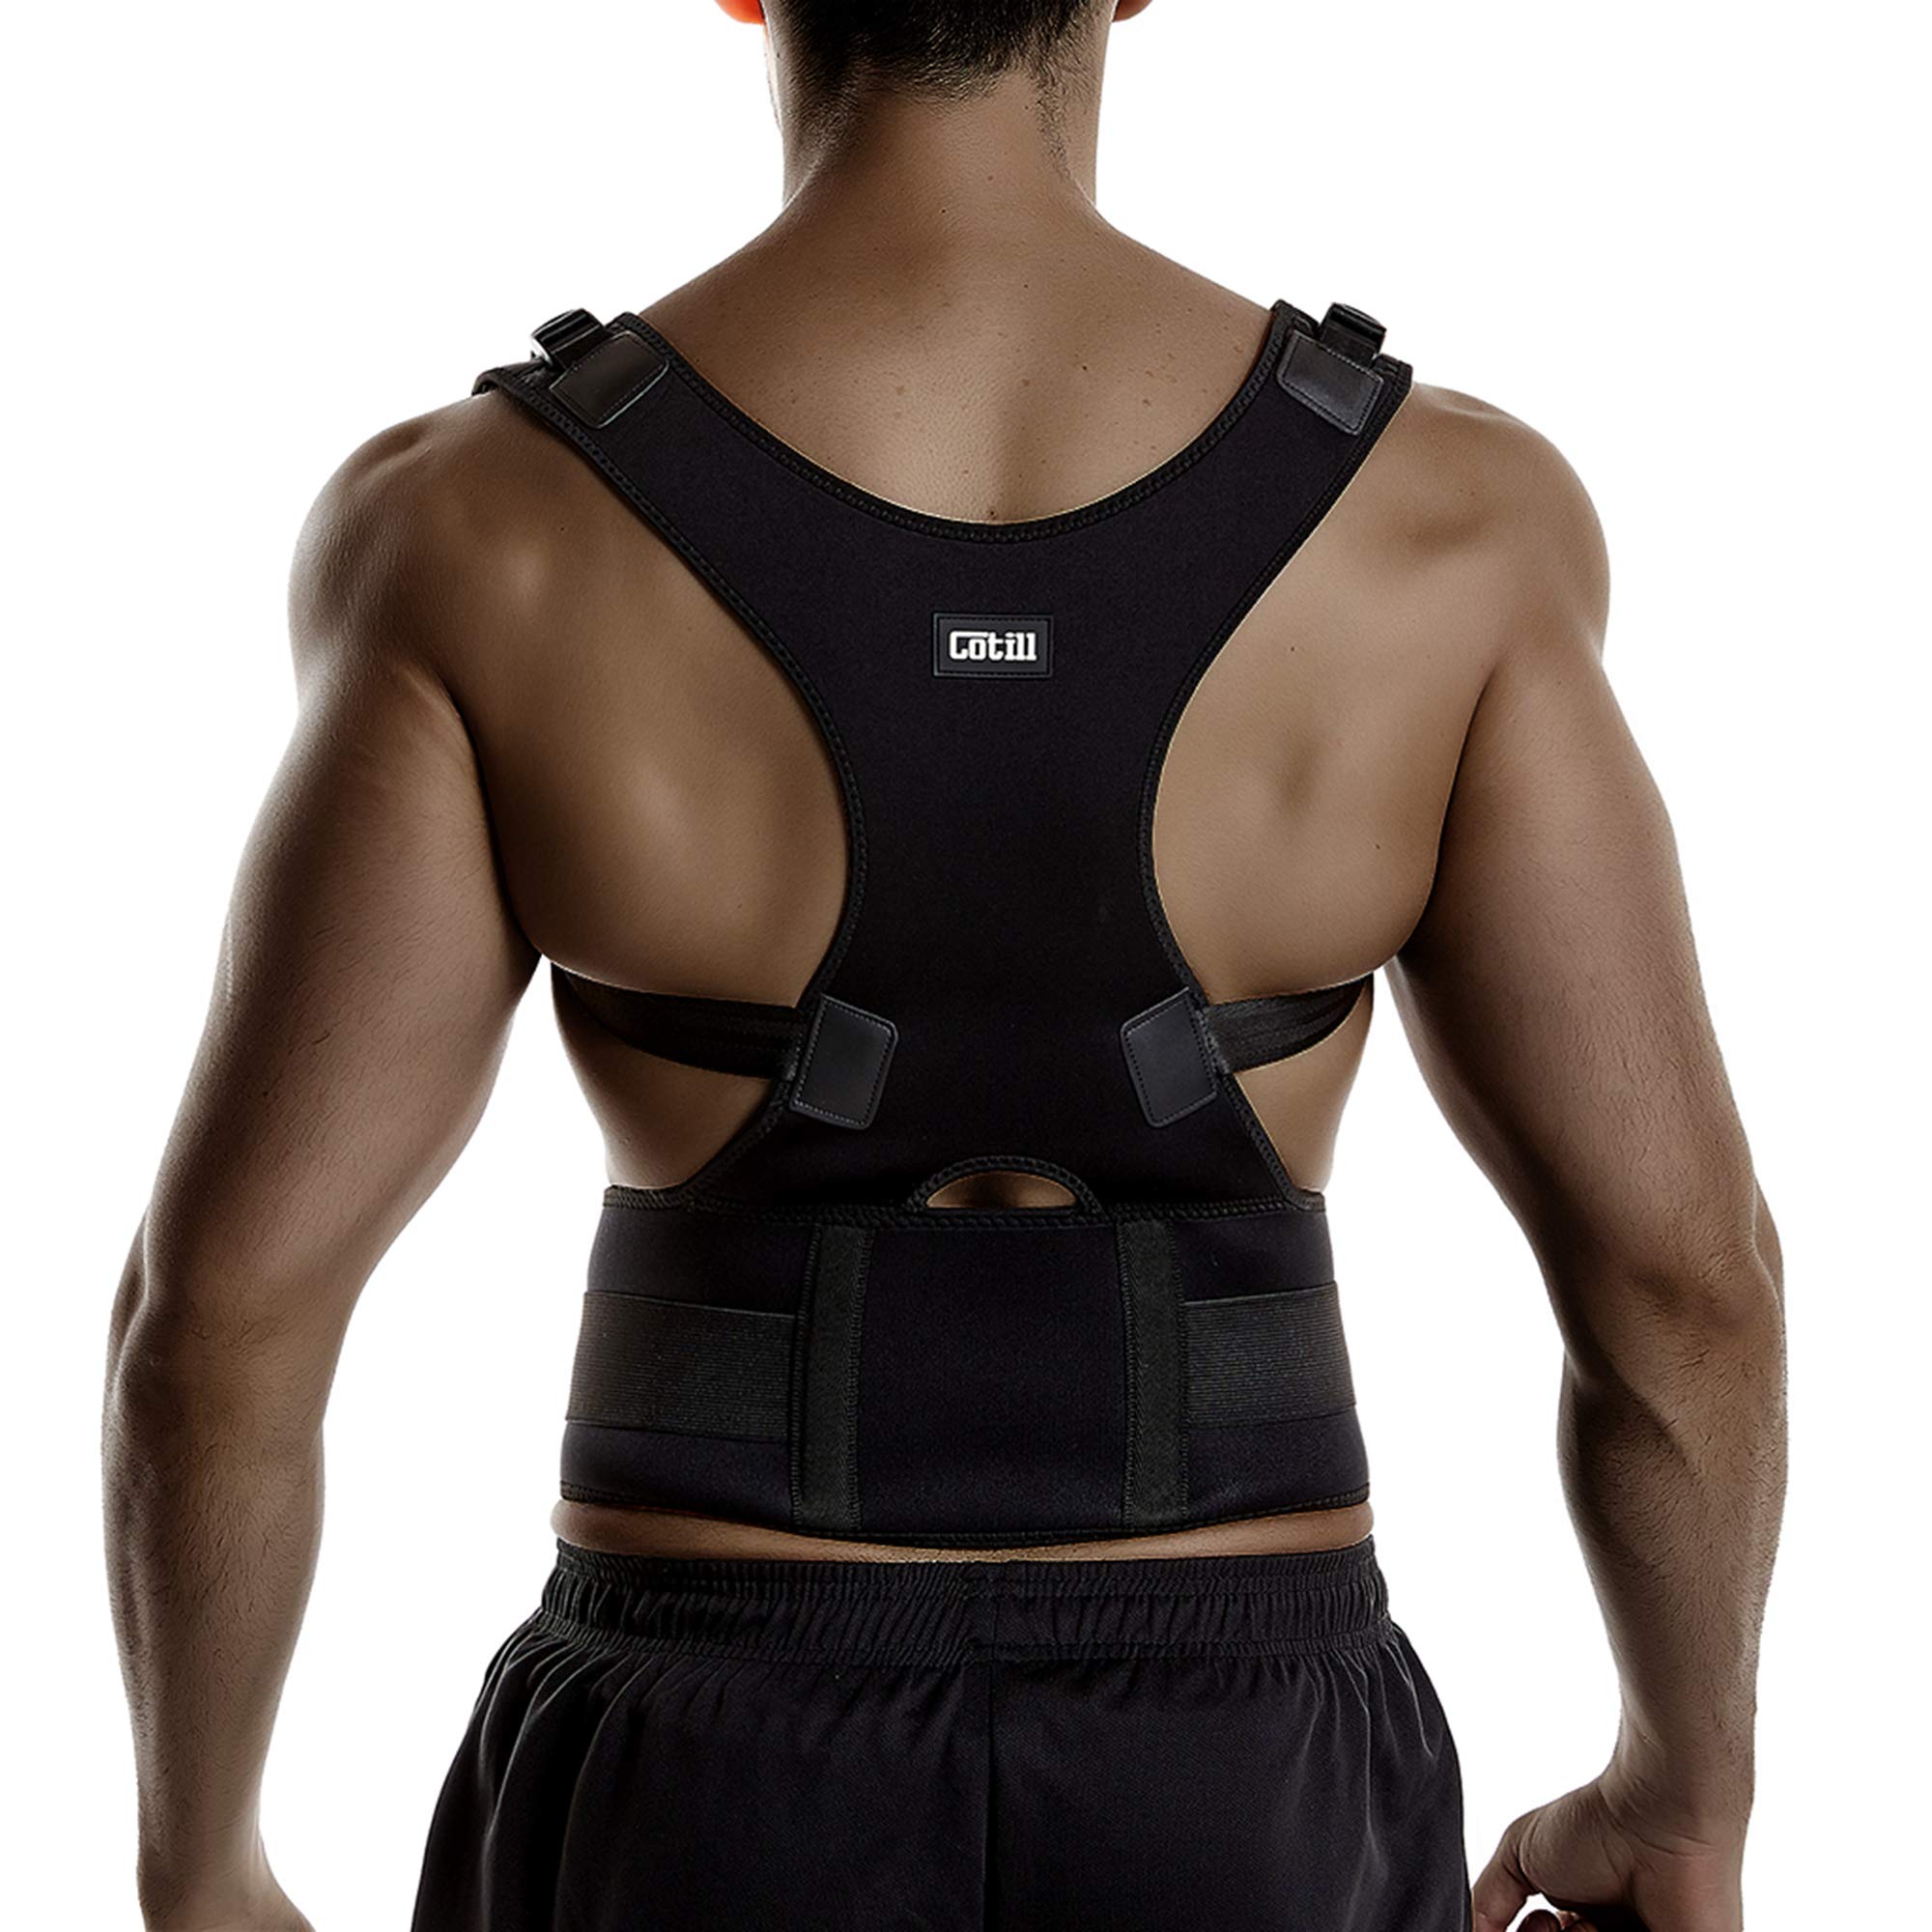 Adjustable shoulder brace, back Lumbar Support belt, Posture Corrector men  women